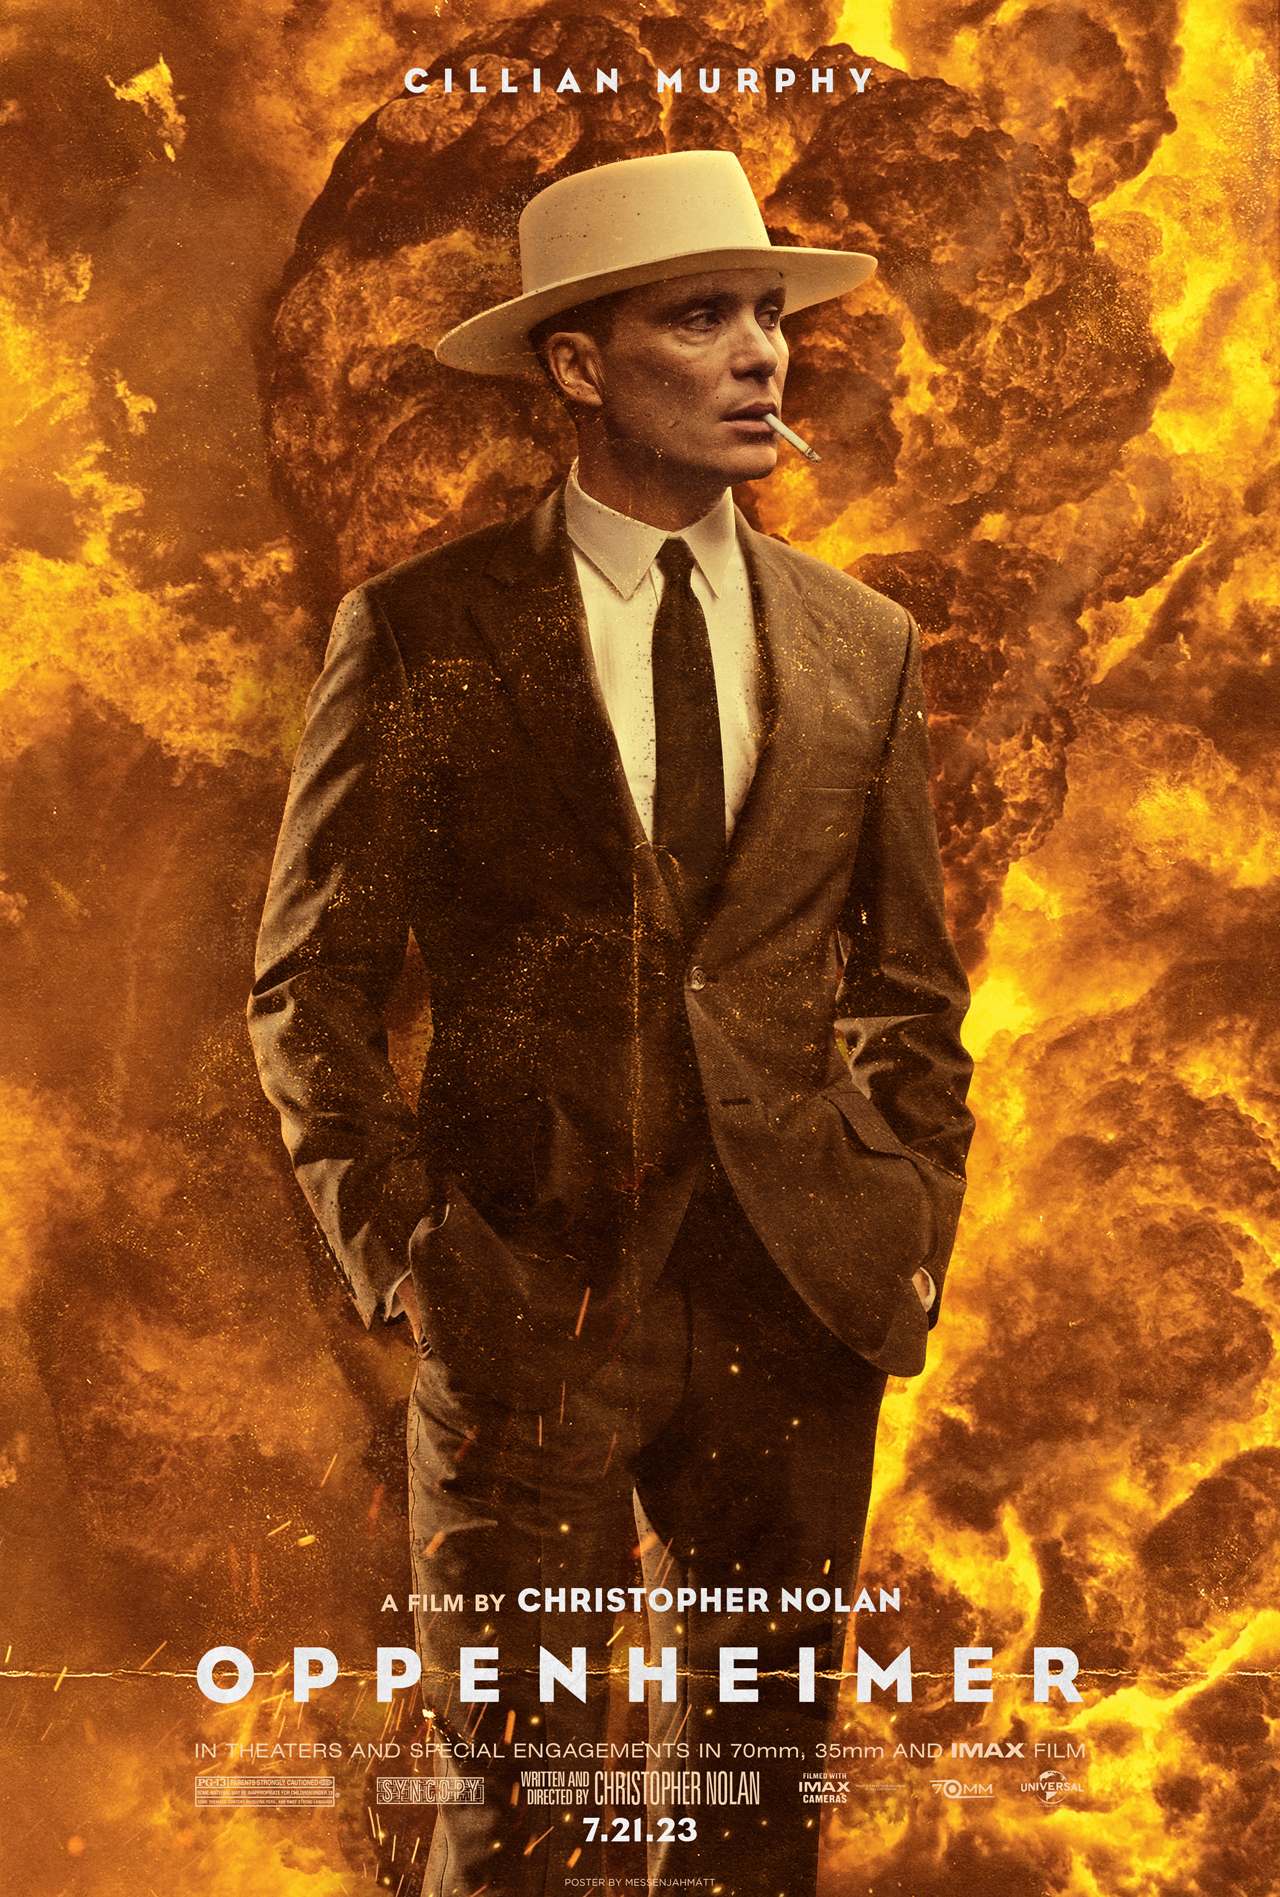 film poster for Christopher Nolan's Oppenheimer